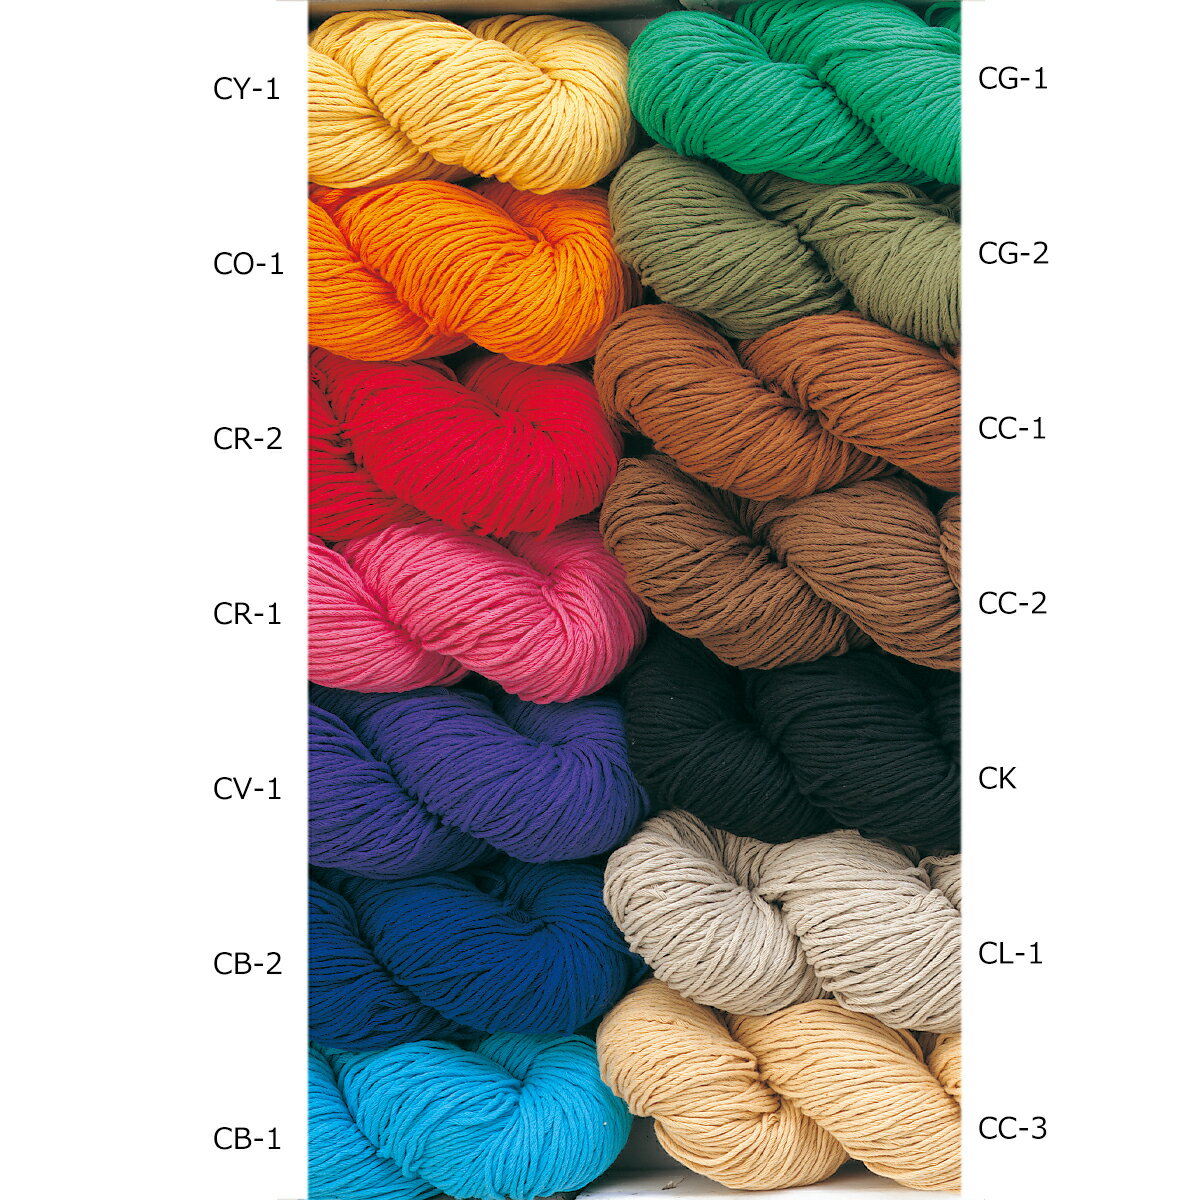 結束糸(超甘縒り糸) コットン100％ 10番糸13本取り(並太) 約45g 約55m ほとんど縒っていないタイプのソフトな綿糸です。 ウールの毛糸と同じように何にでも使えますが、綿の洗い易さを生かして、バスマットやランチョンマット、テーブルクロス、あるいは袋物の織りにピッタリです。 もちろん、コットンセーターなどの編み物にも向いています。 ※写真は、色見本用のもので、実際の45gの量とは異なります。ご了承下さい。